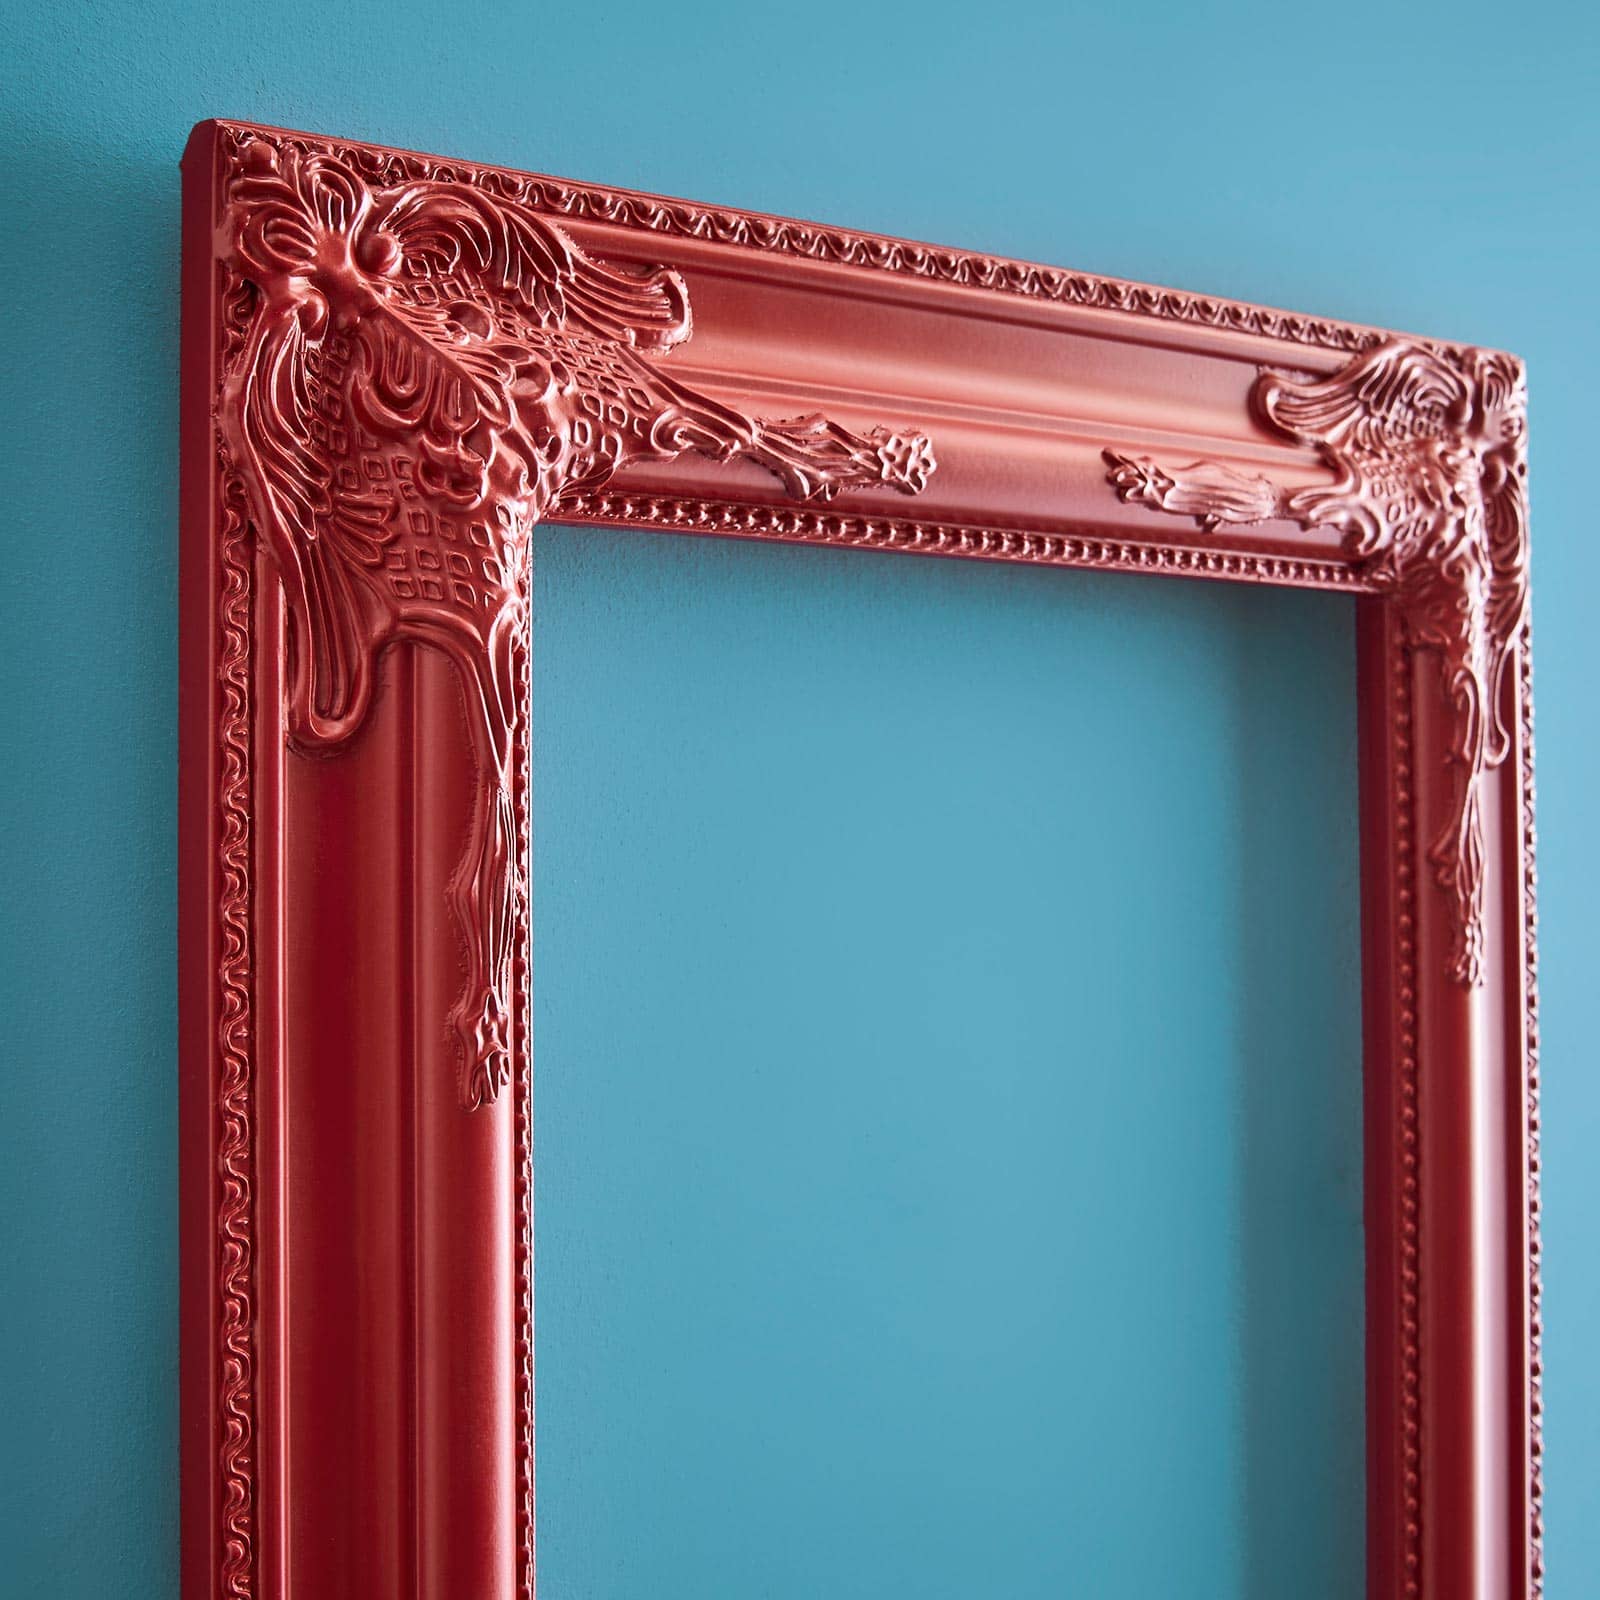 Marco decorativo / marco barroco, rojo